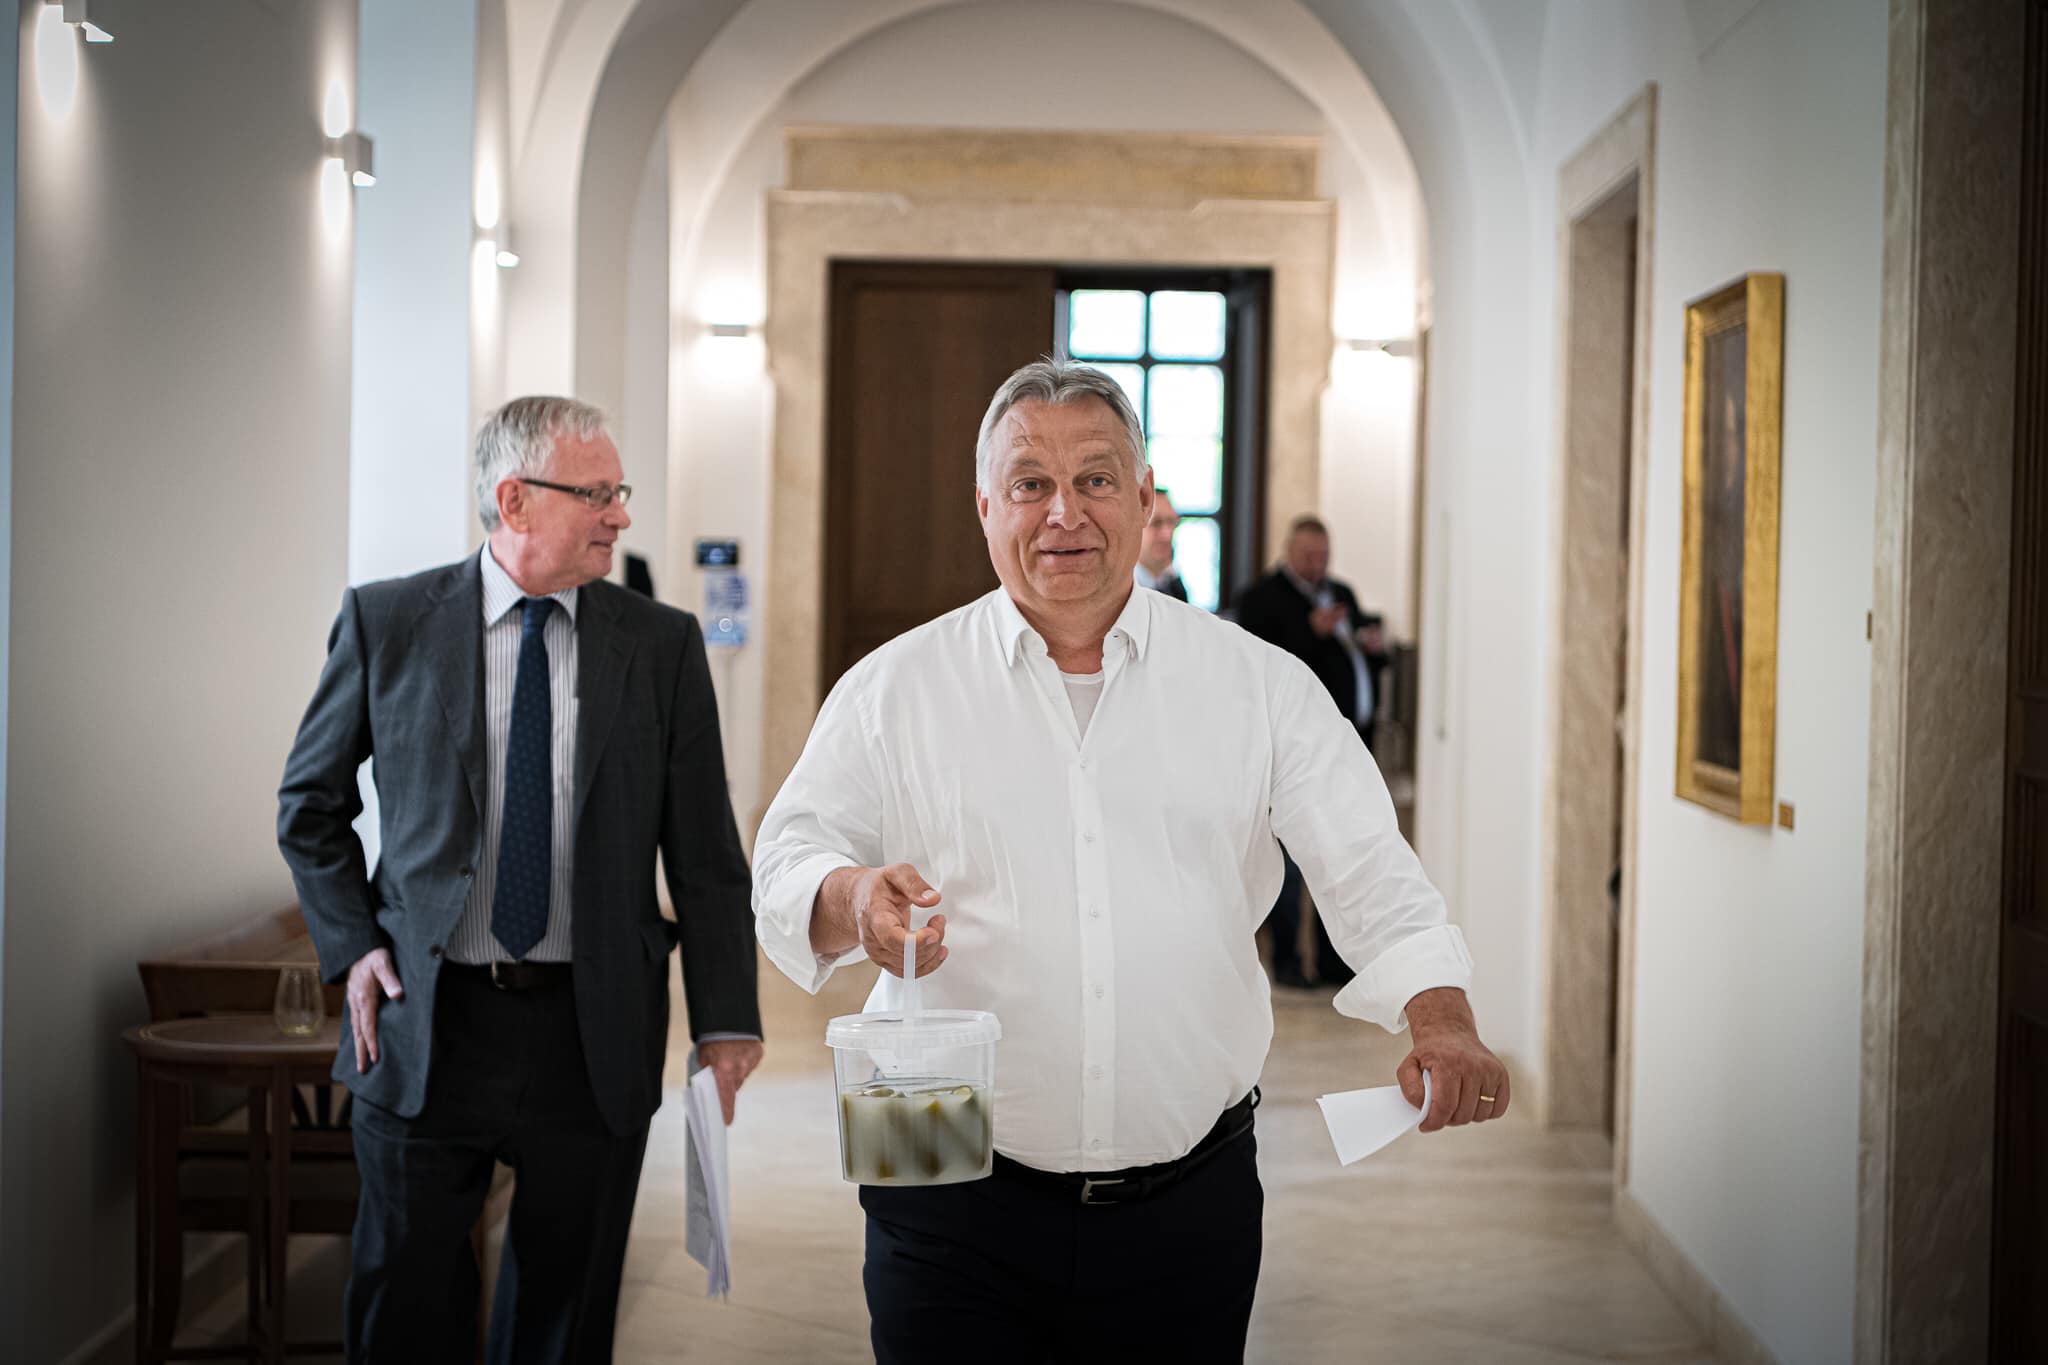 Értse már meg végre mindenki, hogy Orbán Viktor FÉRFI!